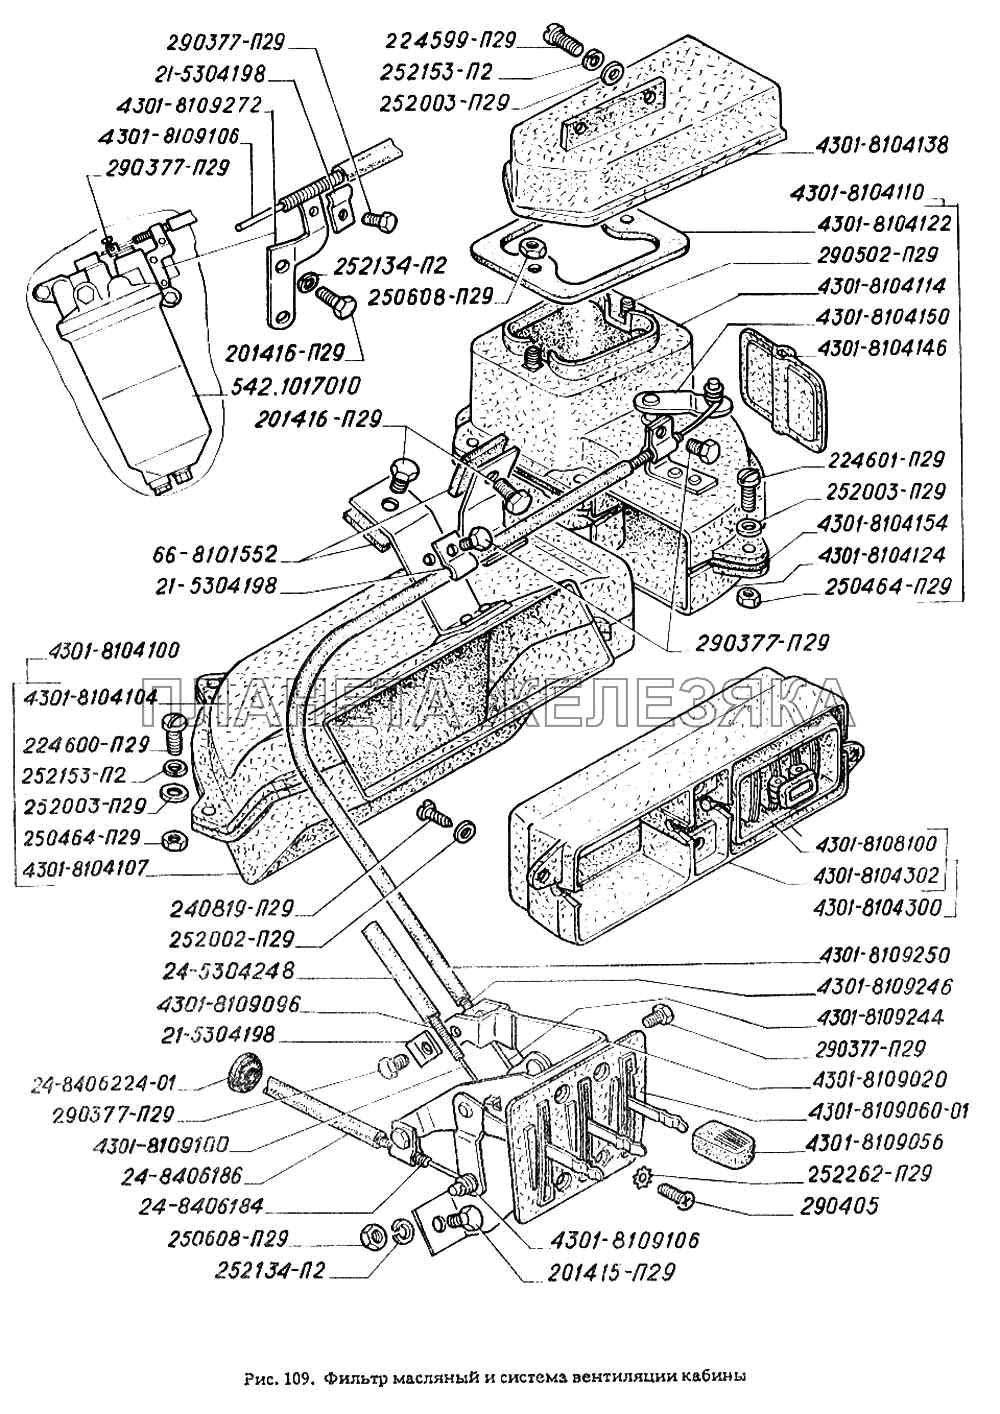 Фильтр масляный и система вентиляции кабины ГАЗ-4301